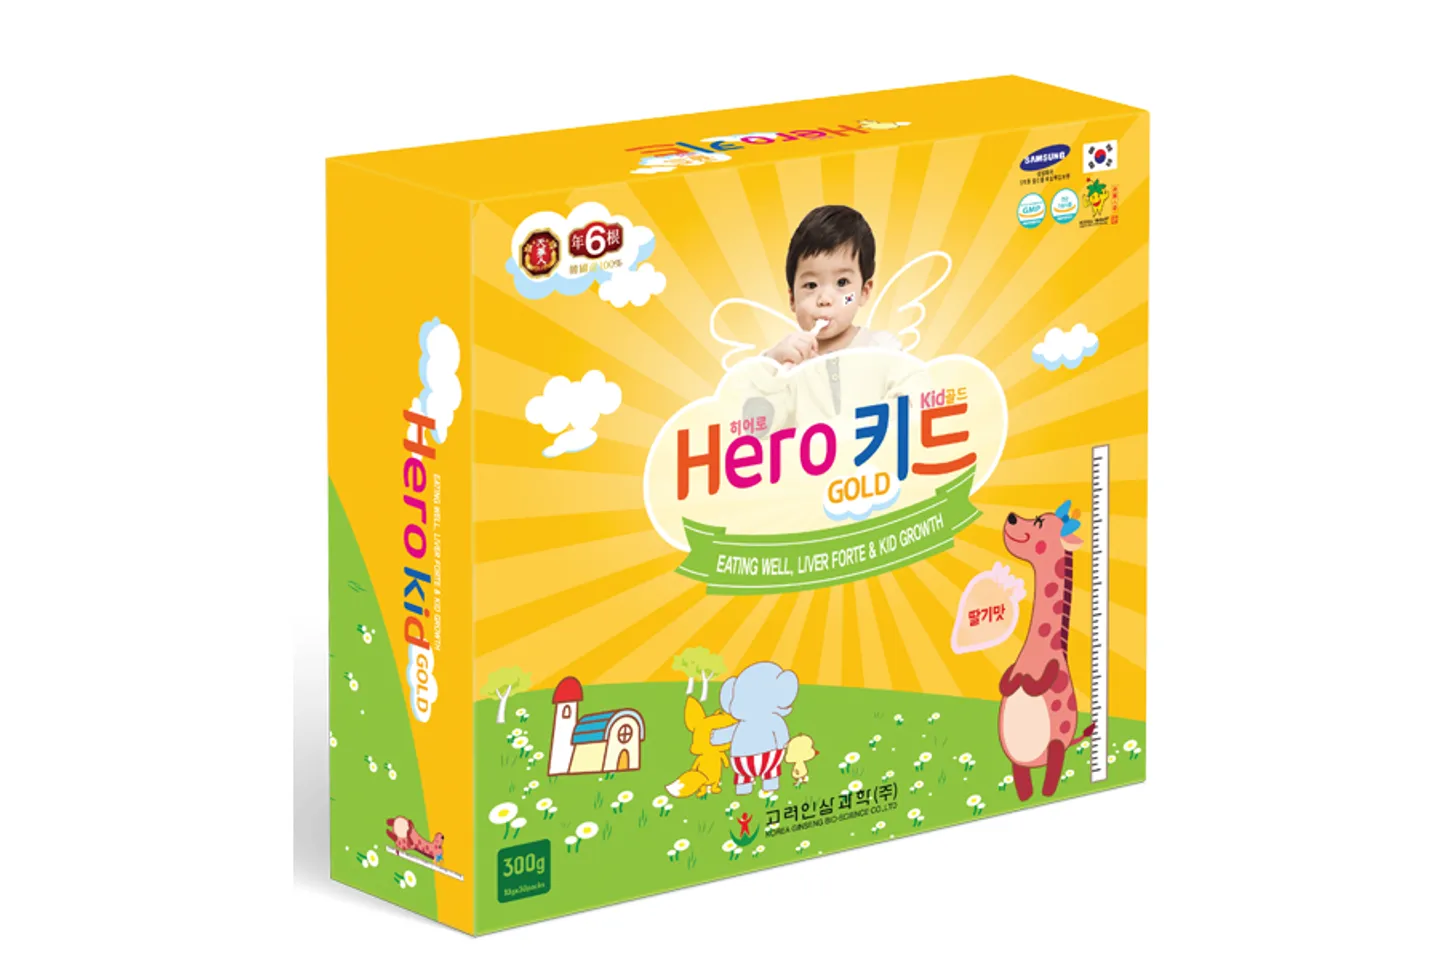 Hero Kid Gold cải thiện biếng ăn cho trẻ